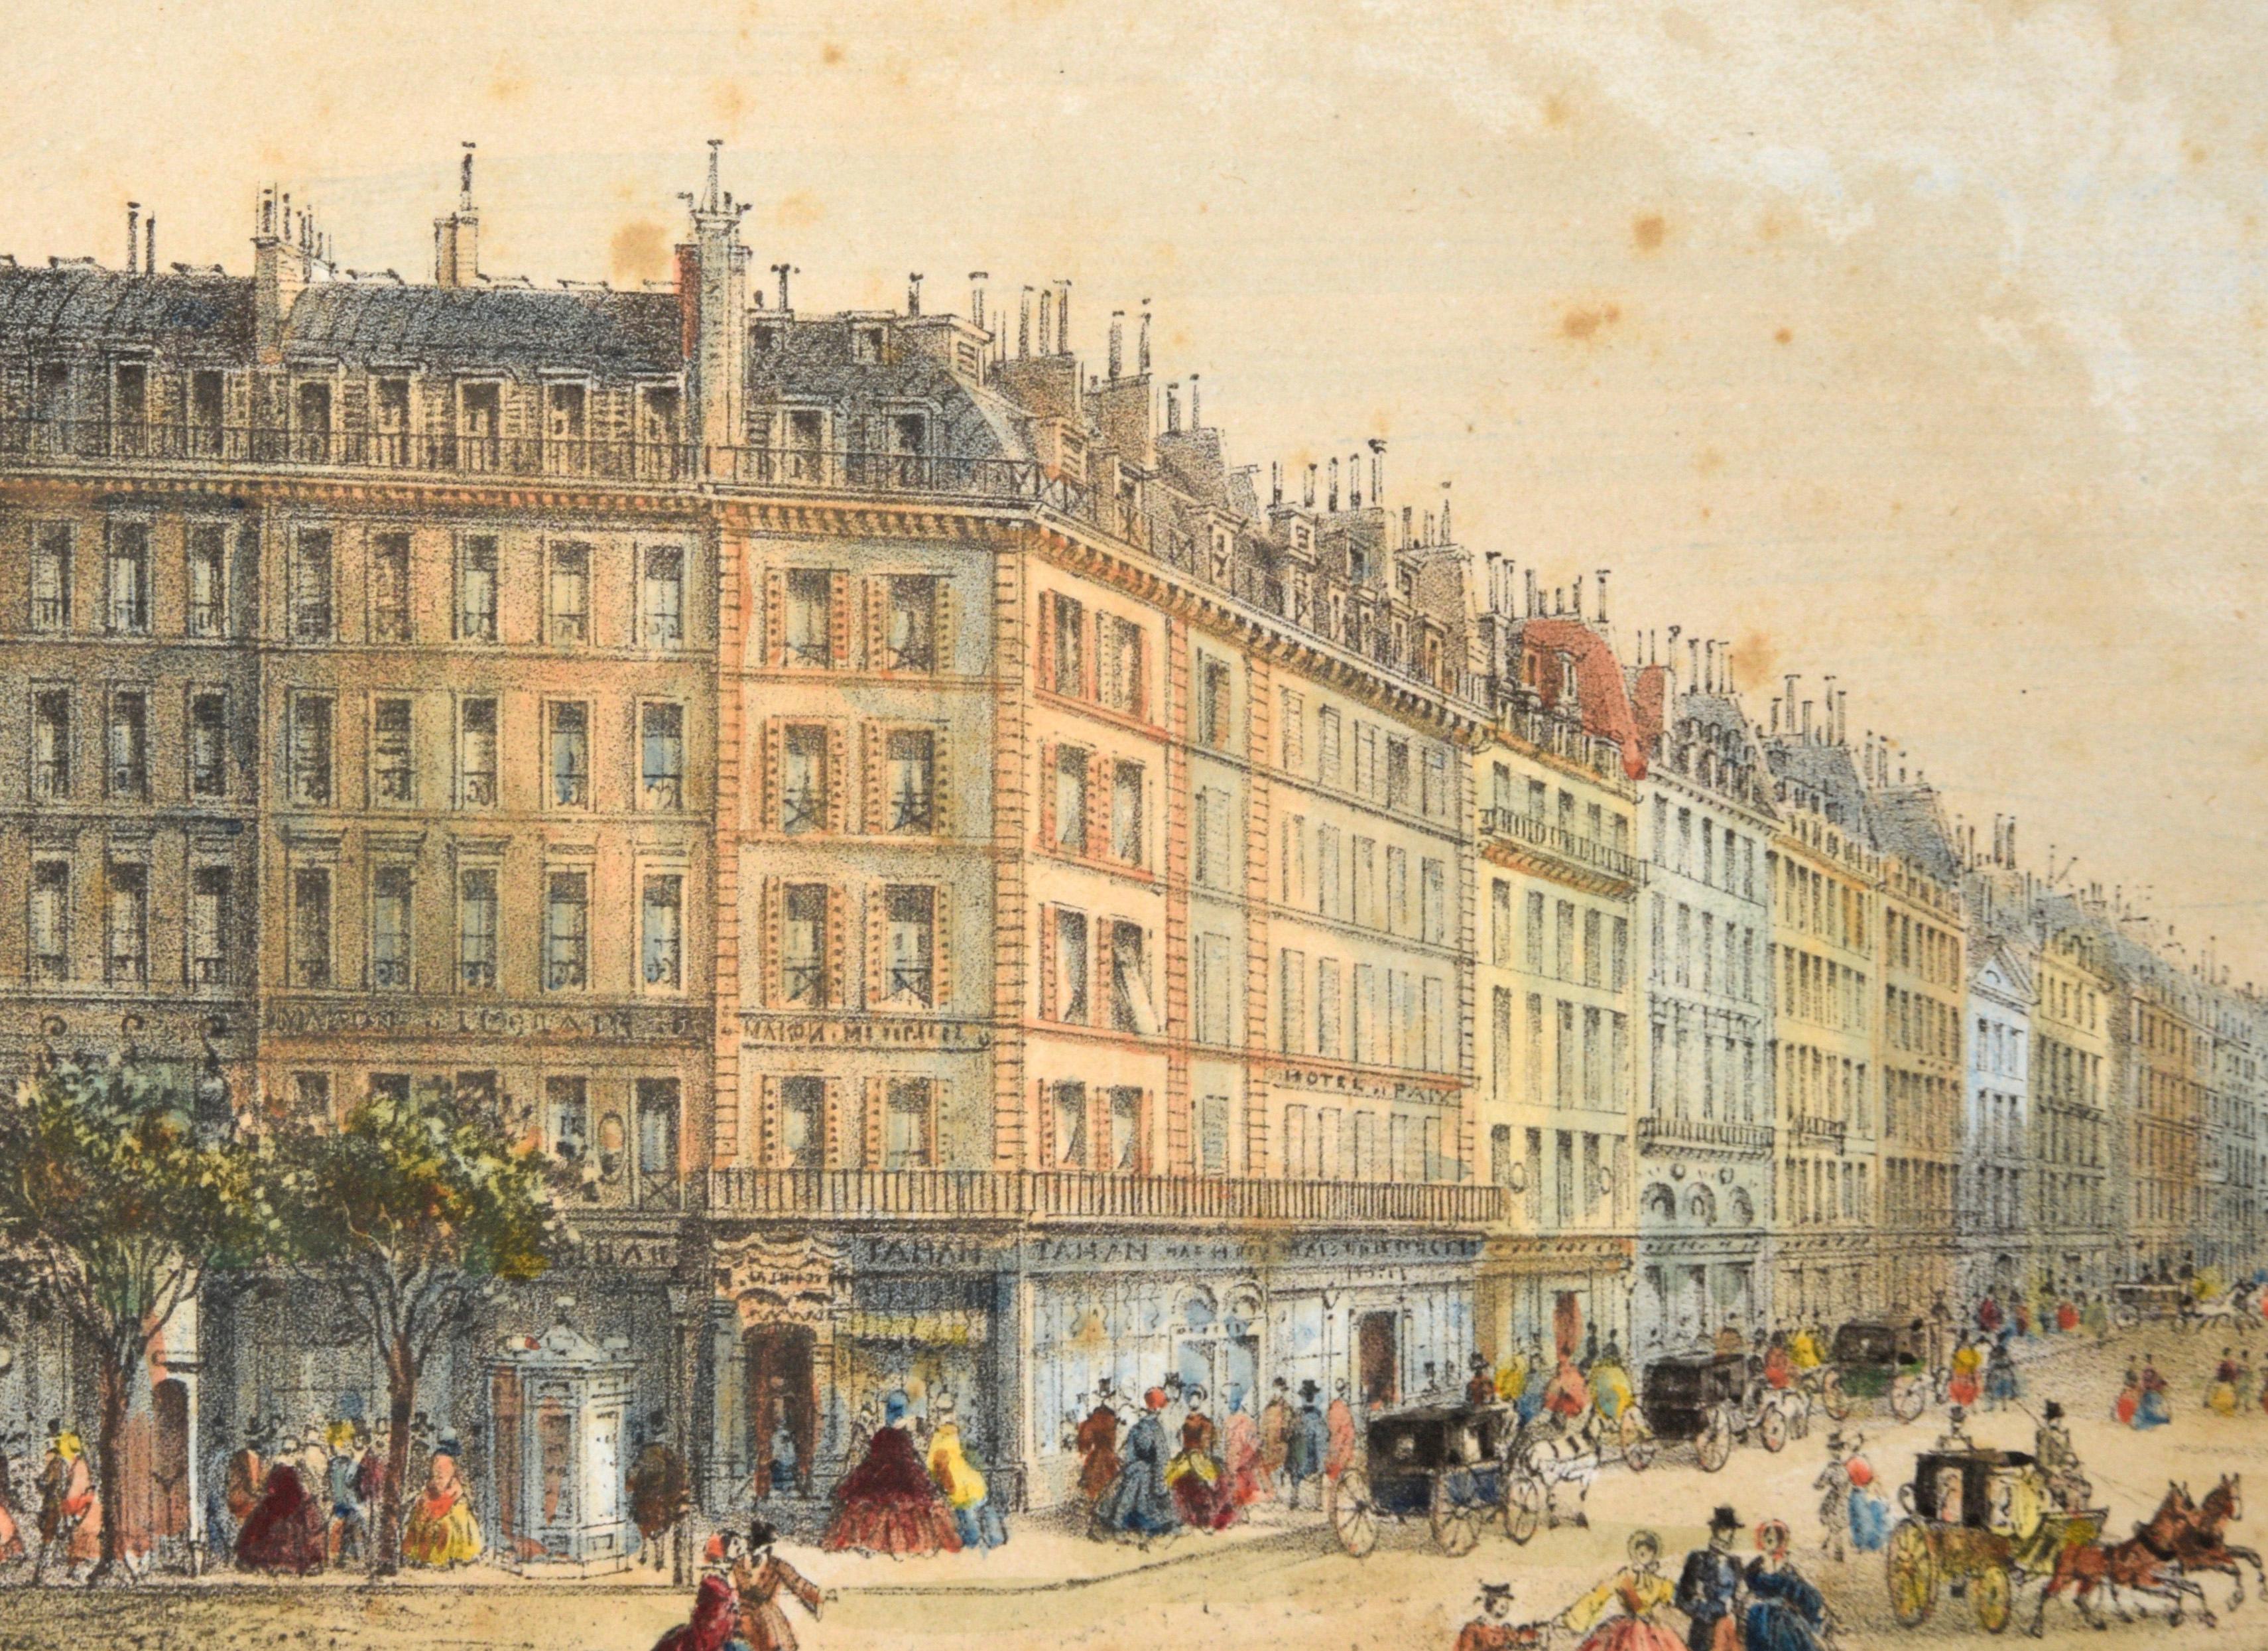 Rue de la Paix, Paris - Hand Colored Lithograph 1845-1860 - Romantic Print by Rose-Joseph Lemercier 